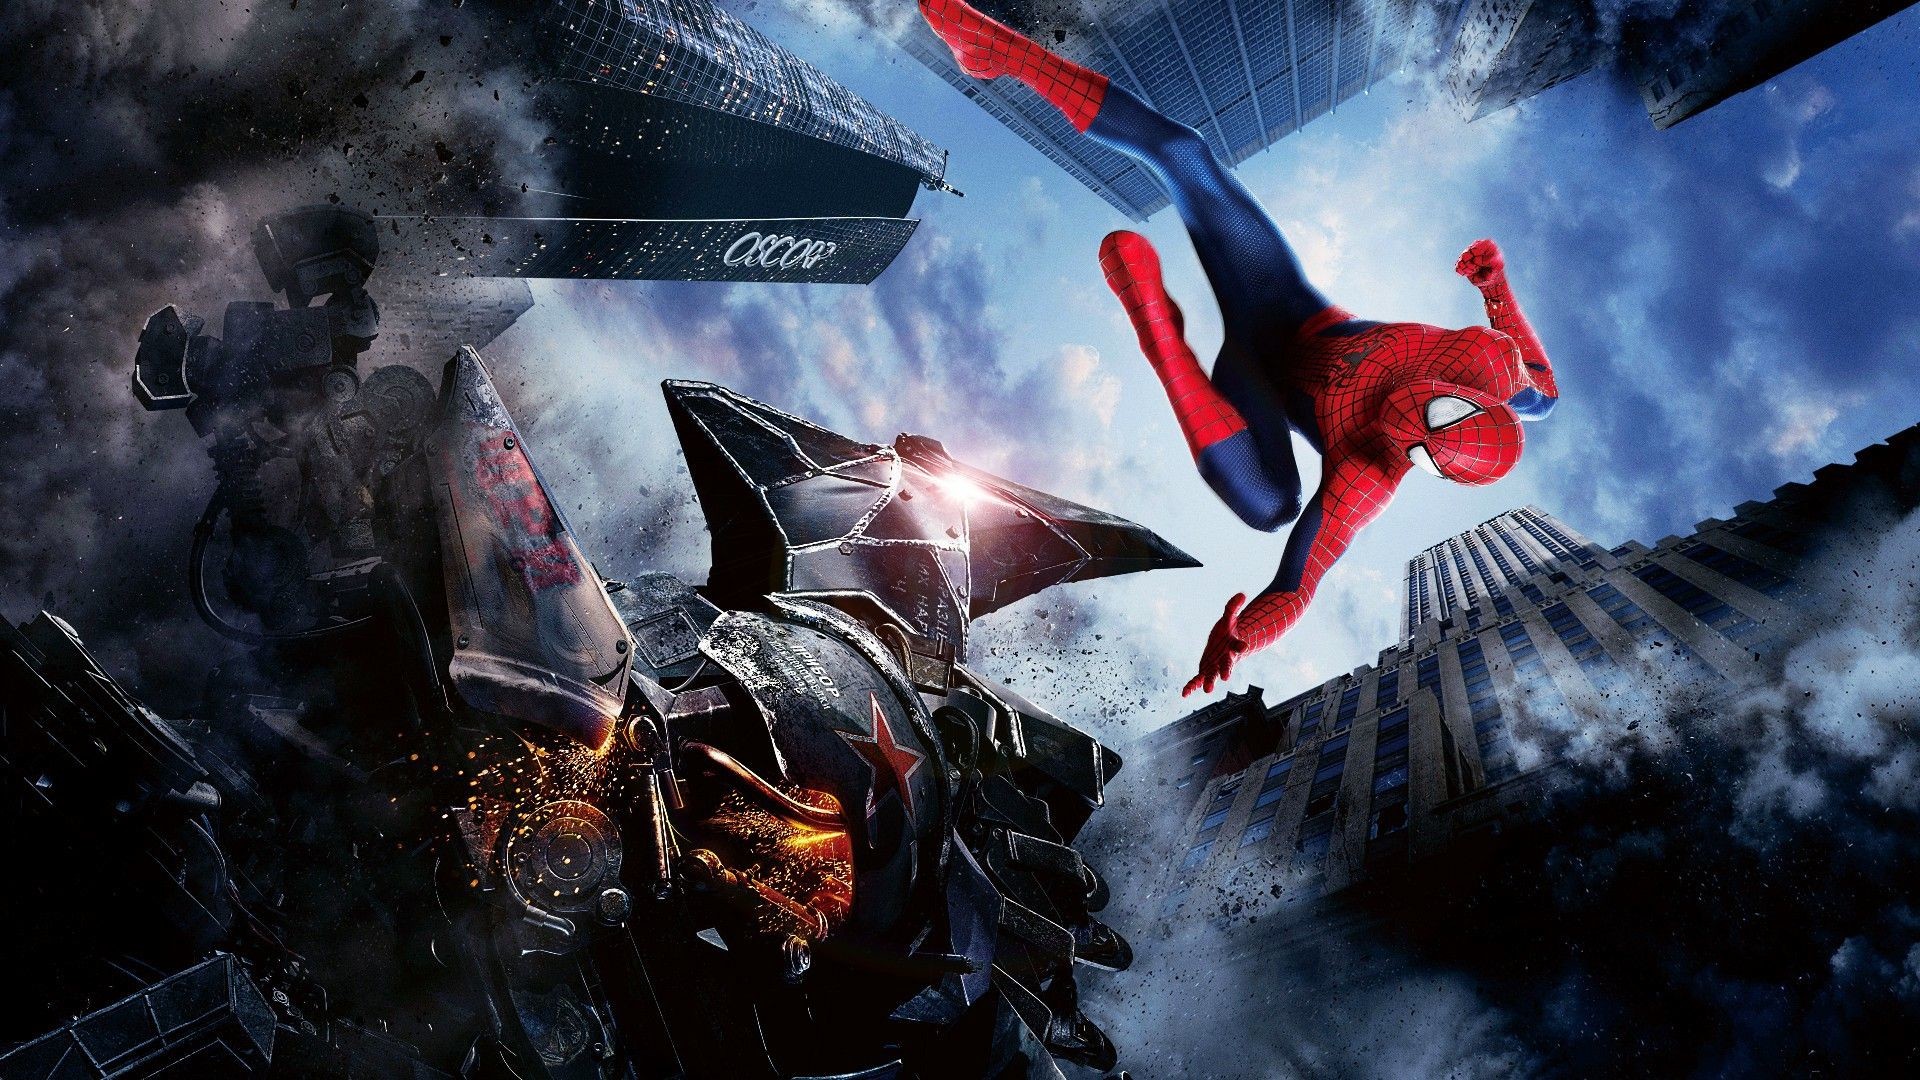 fondo de pantalla de spiderman homecoming,juego de acción y aventura,personaje de ficción,cg artwork,superhéroe,hombre murciélago